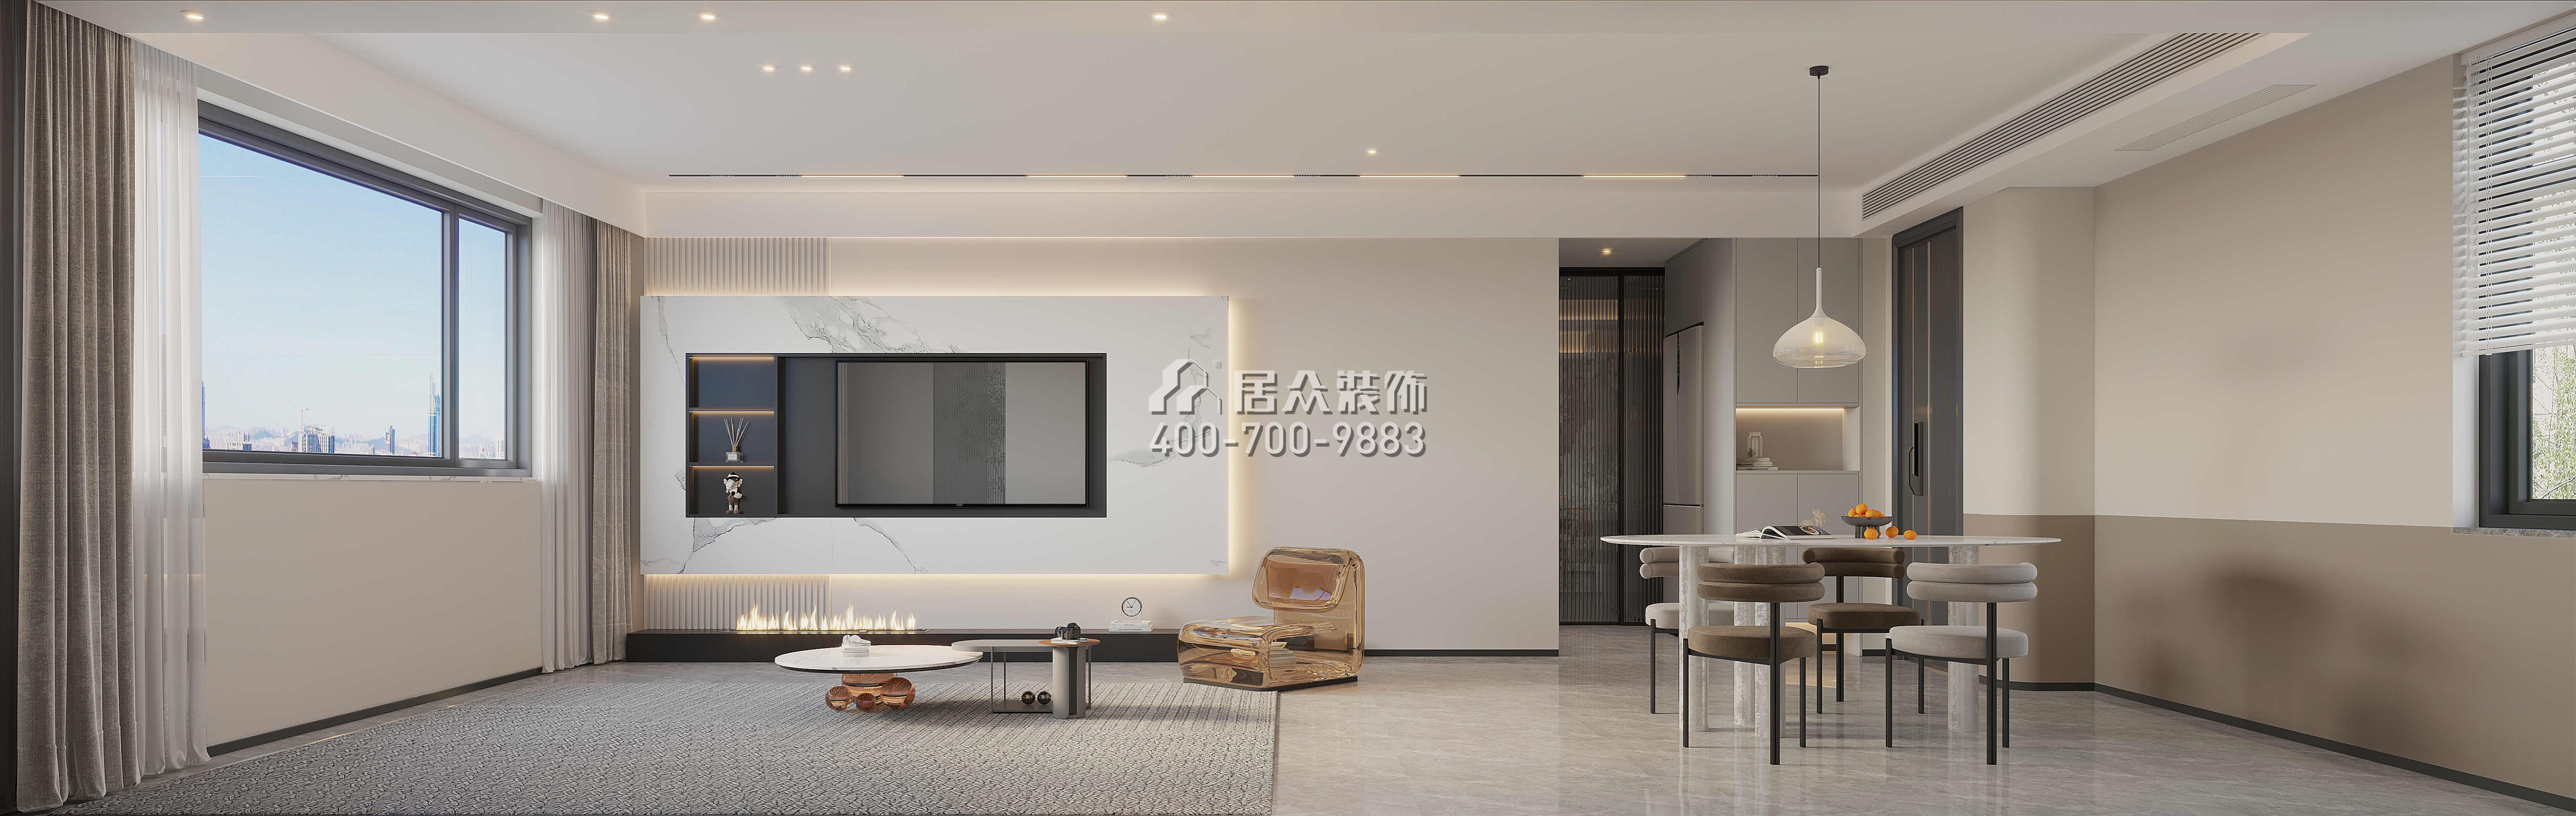 发展兴苑120平方米现代简约风格平层户型客厅装修效果图